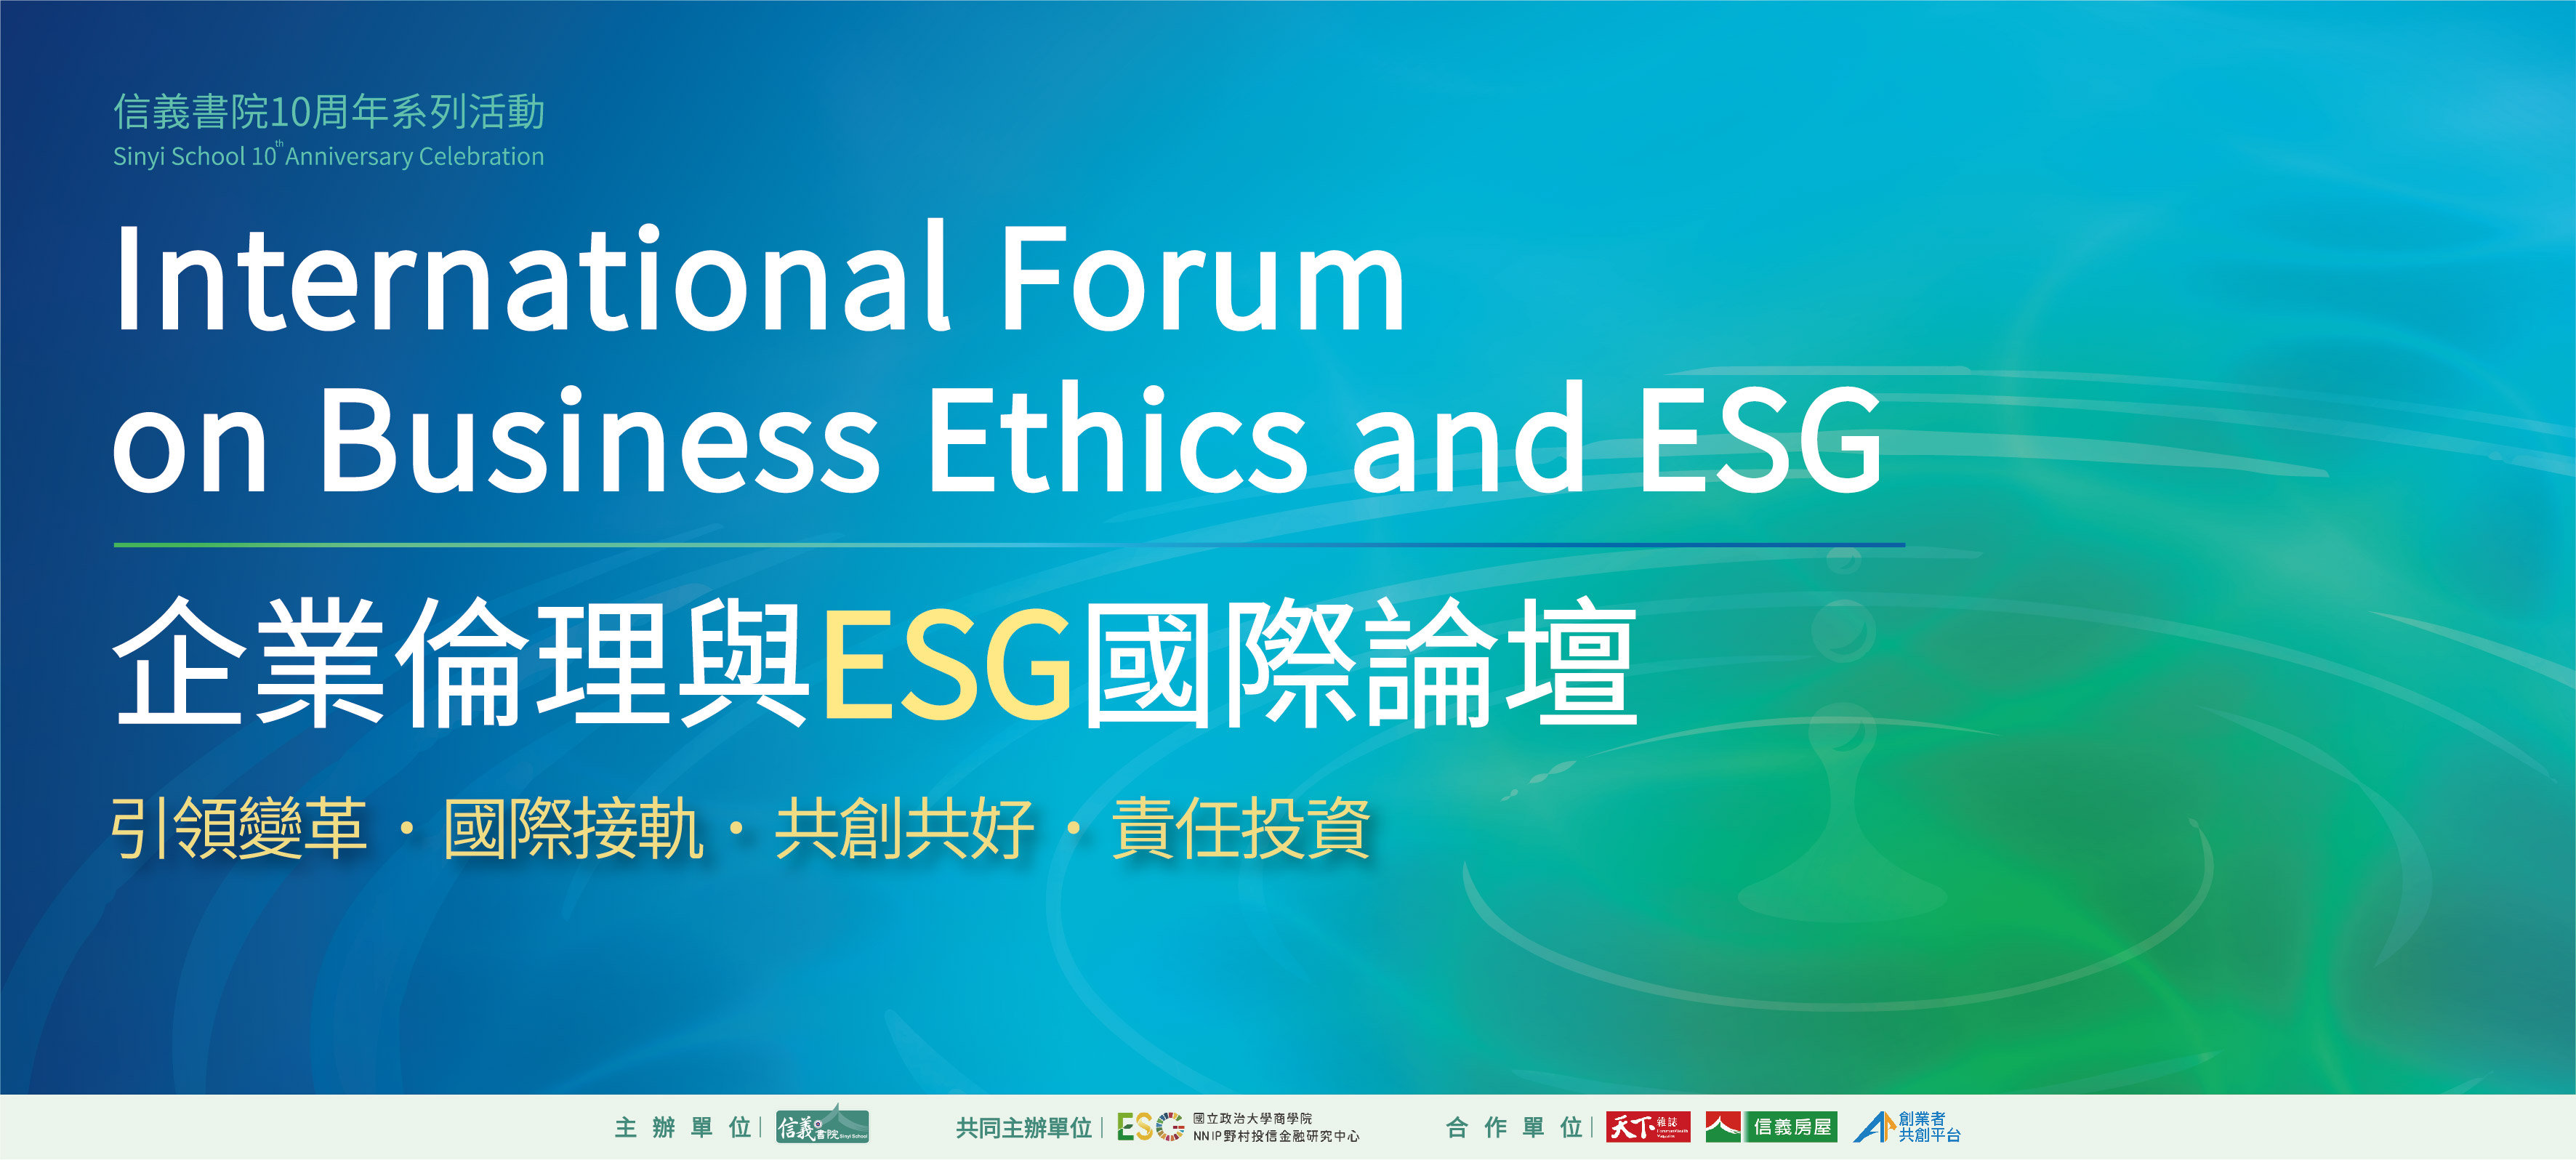 企业伦理与ESG国际论坛